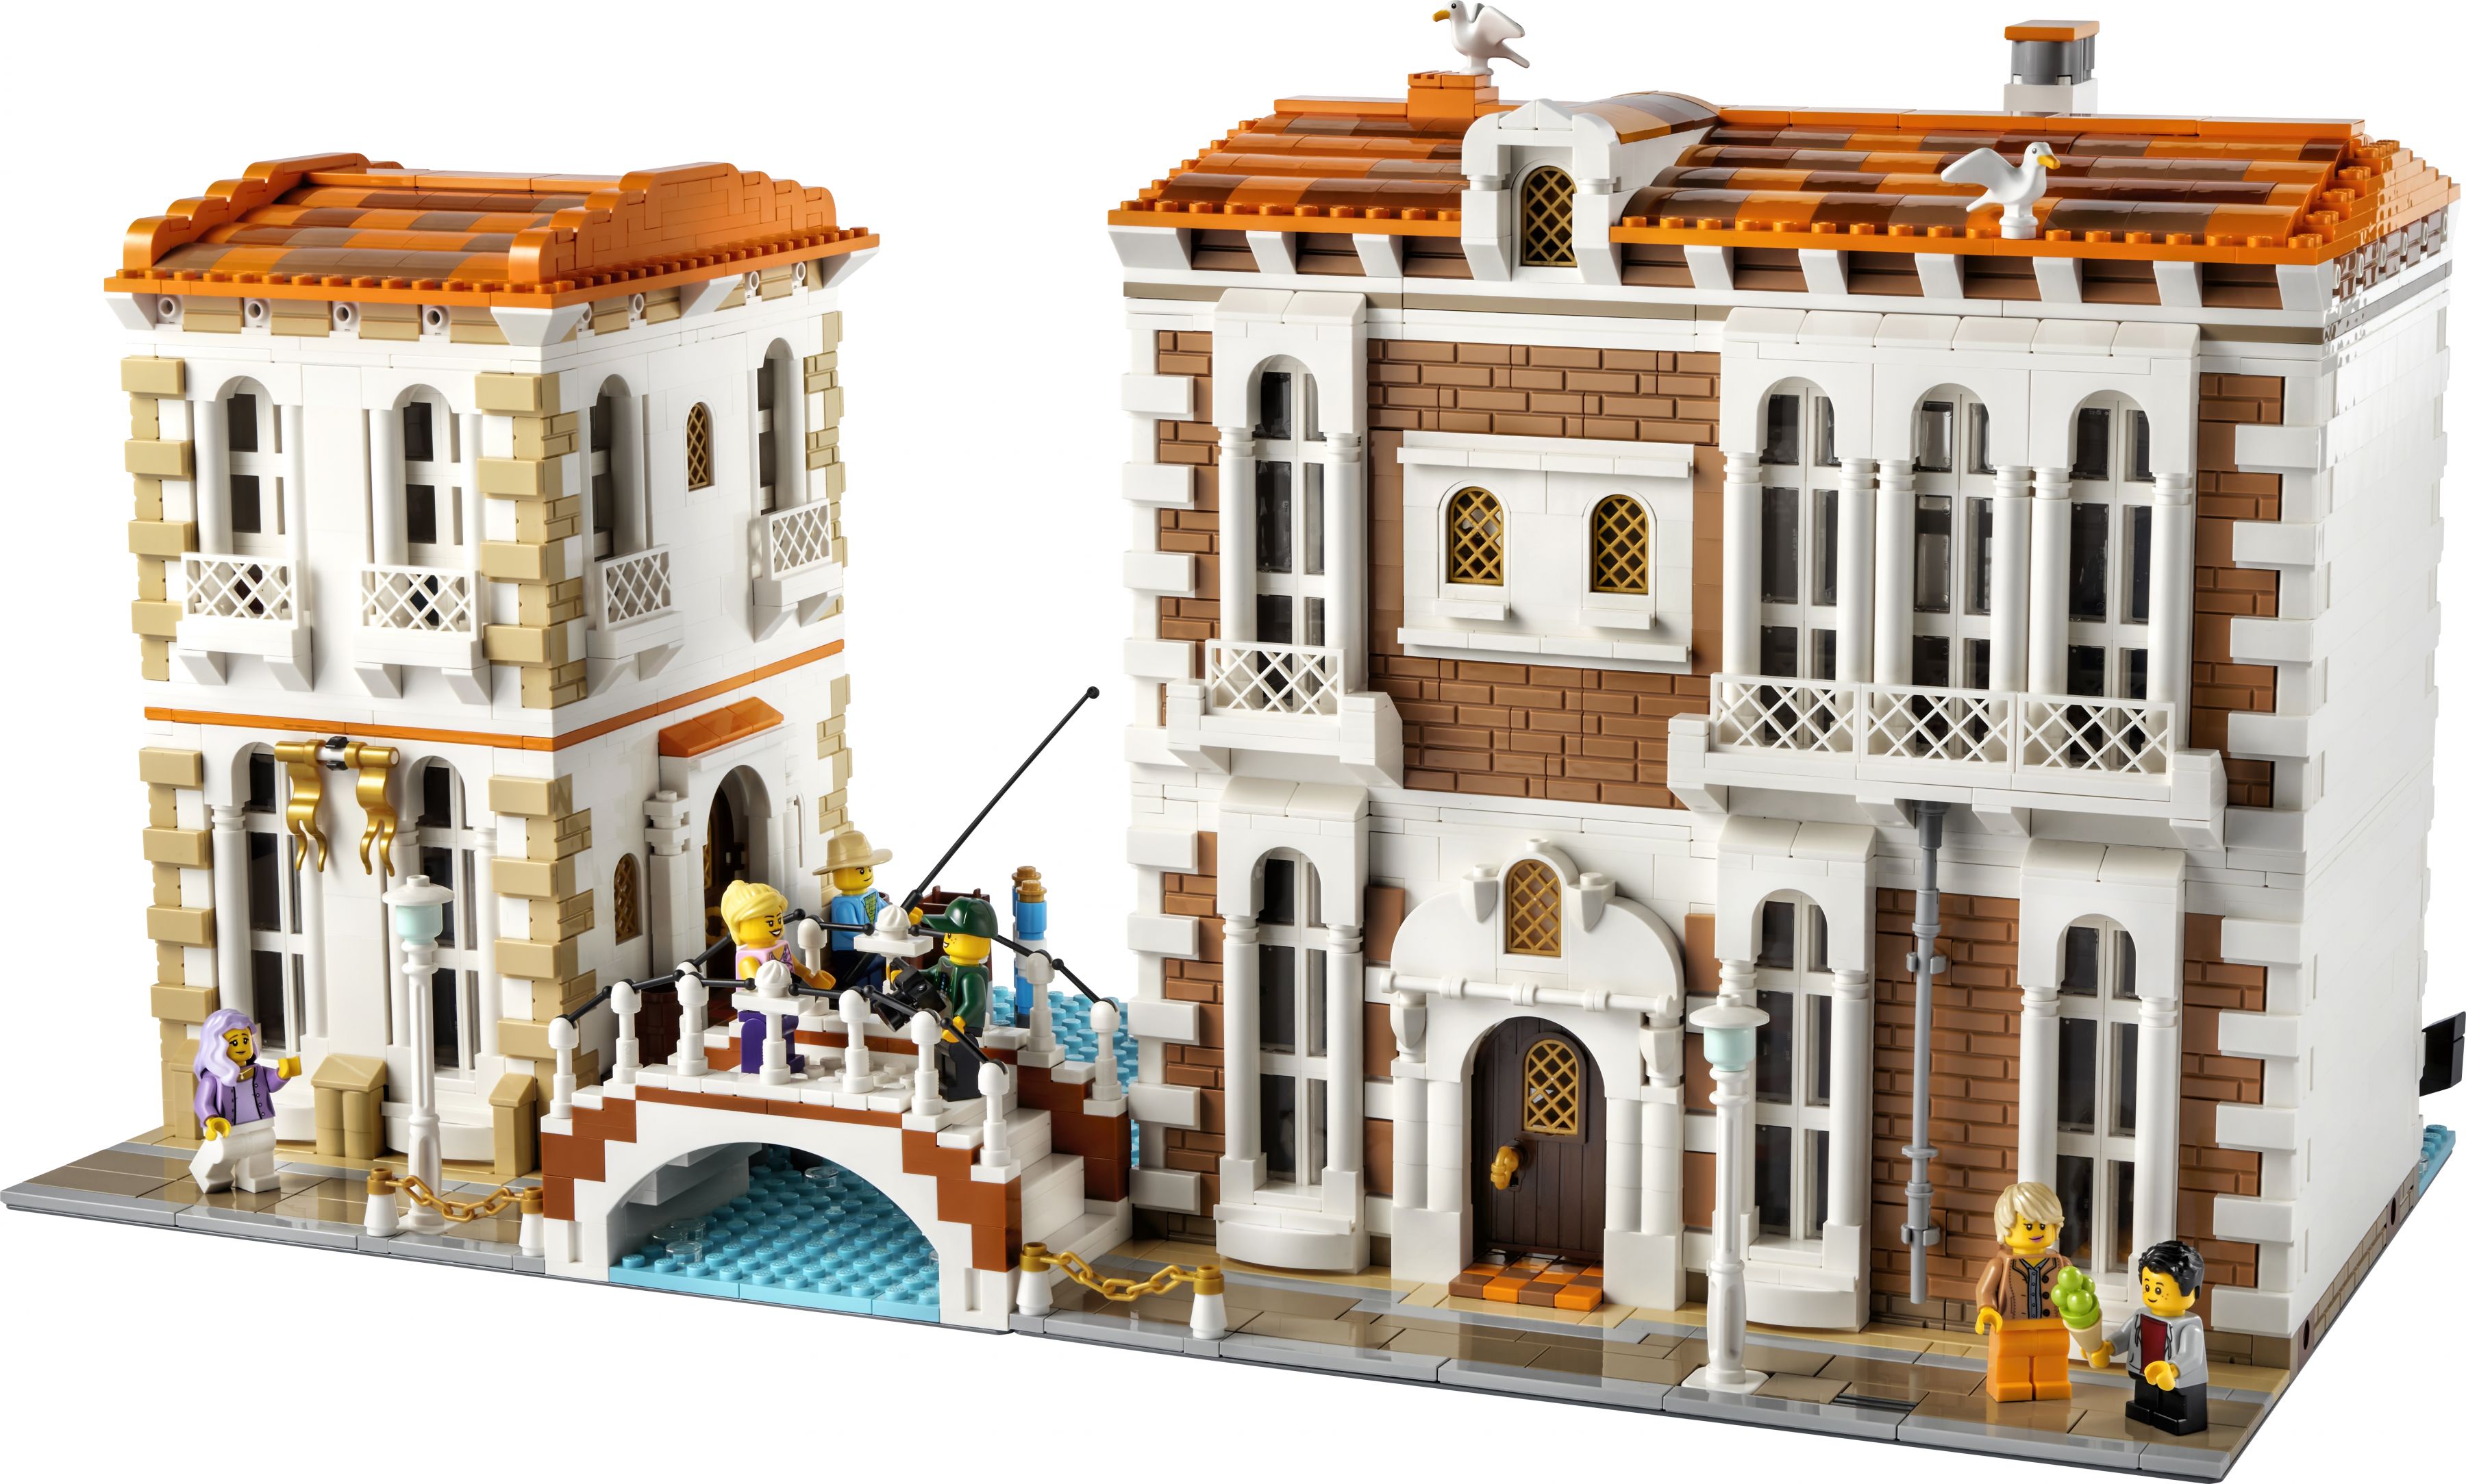 LEGO Bricklink 910023 Venezianische Häuser LEGO_910023_front_01.jpg